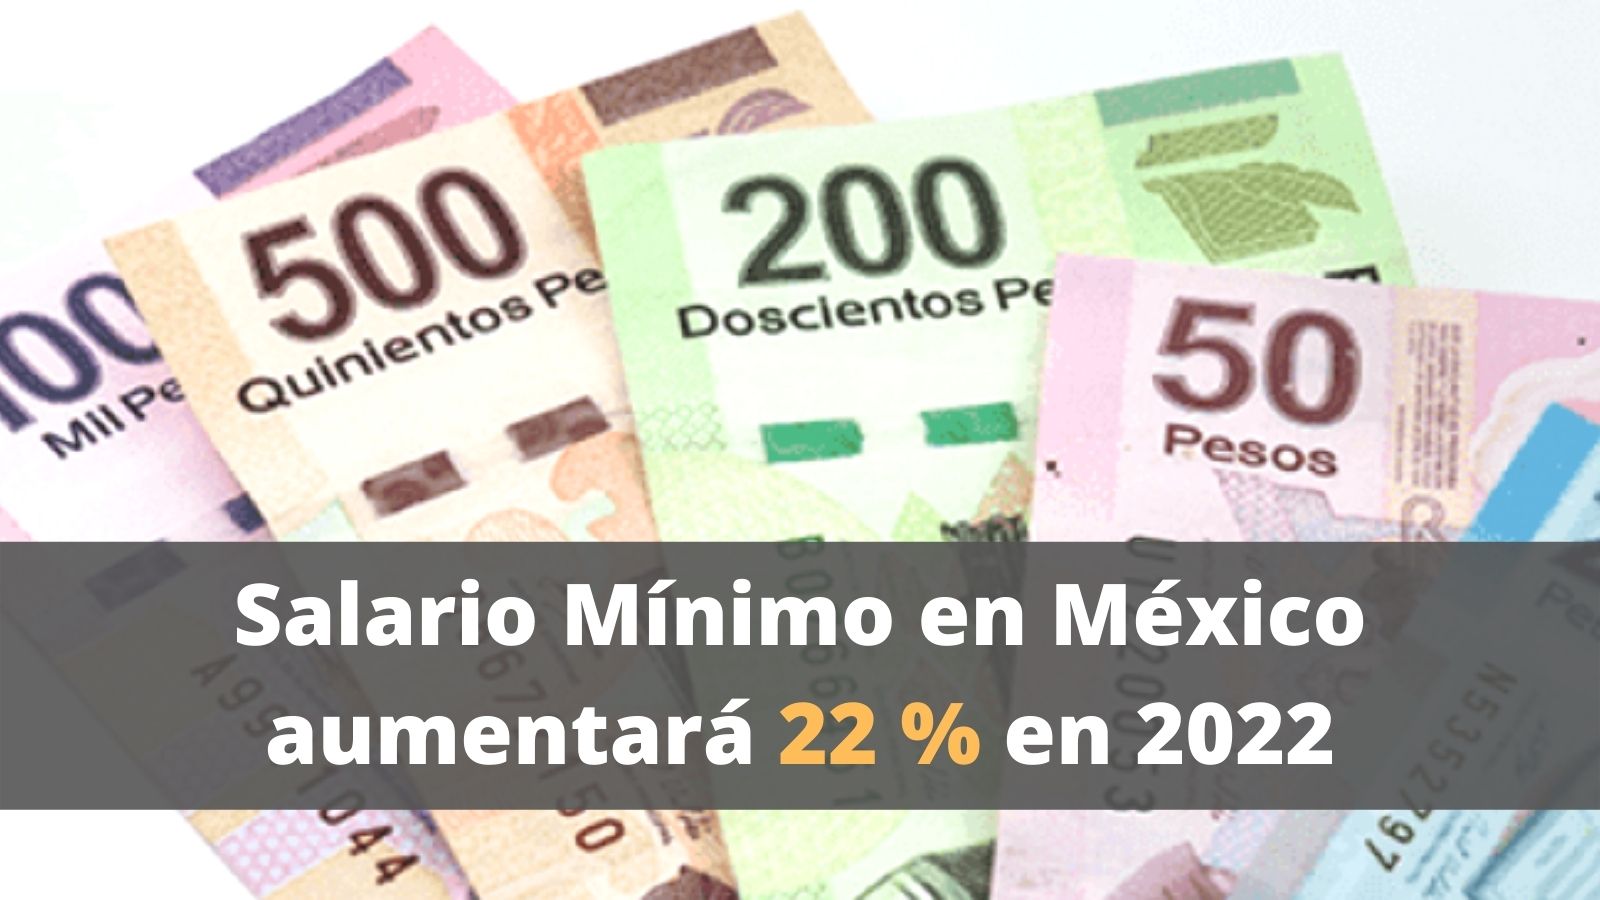 Salario Mínimo aumentará en 2022 en México